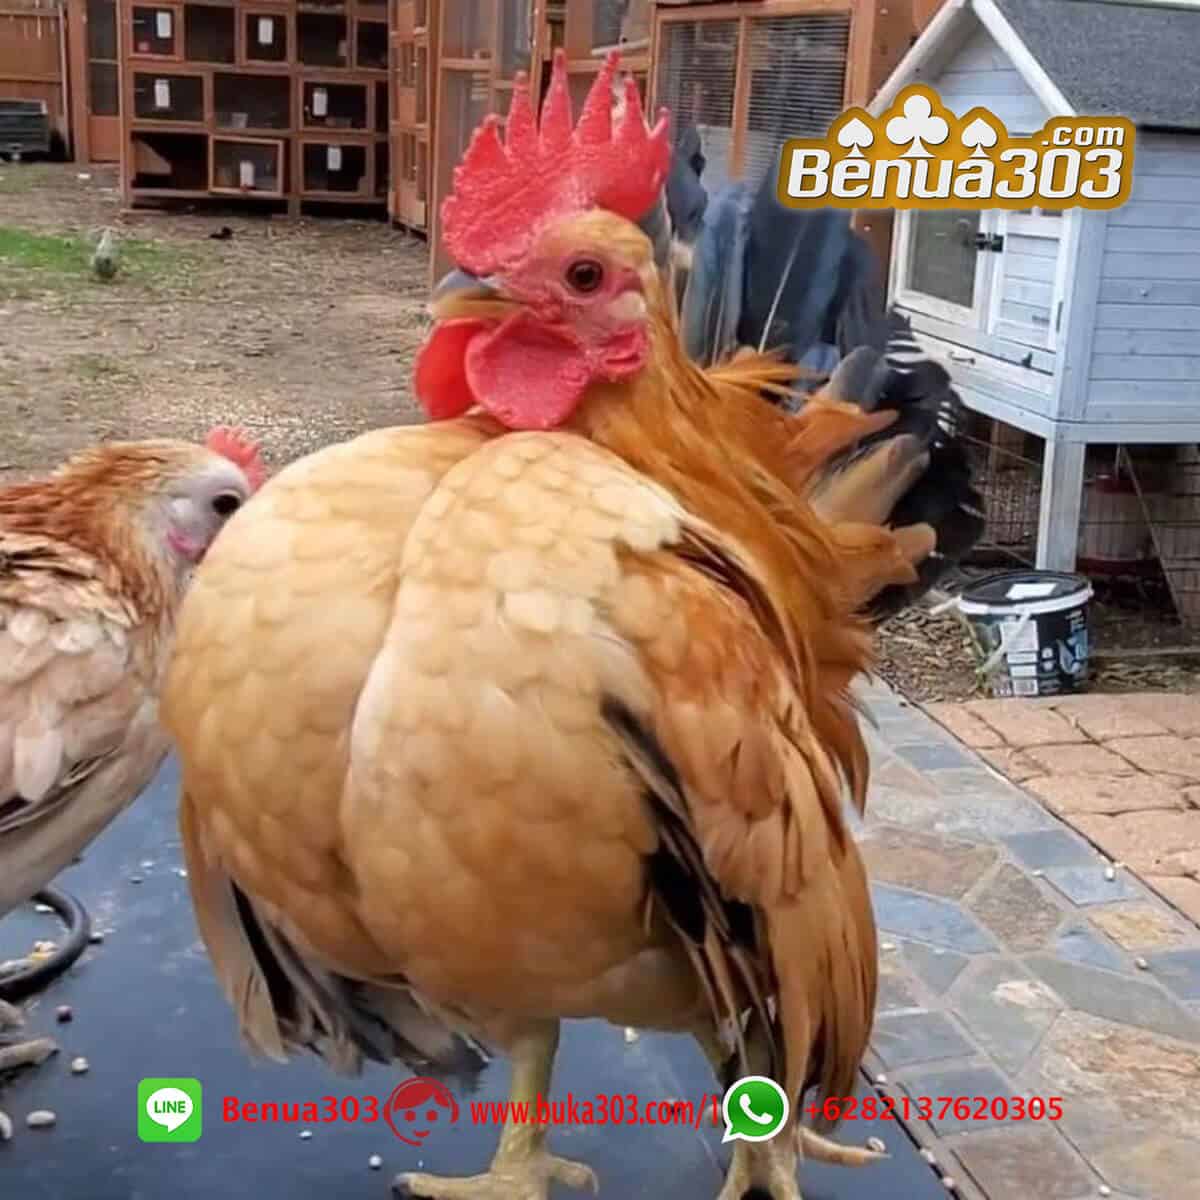 Bantuan Modal Sabung Ayam